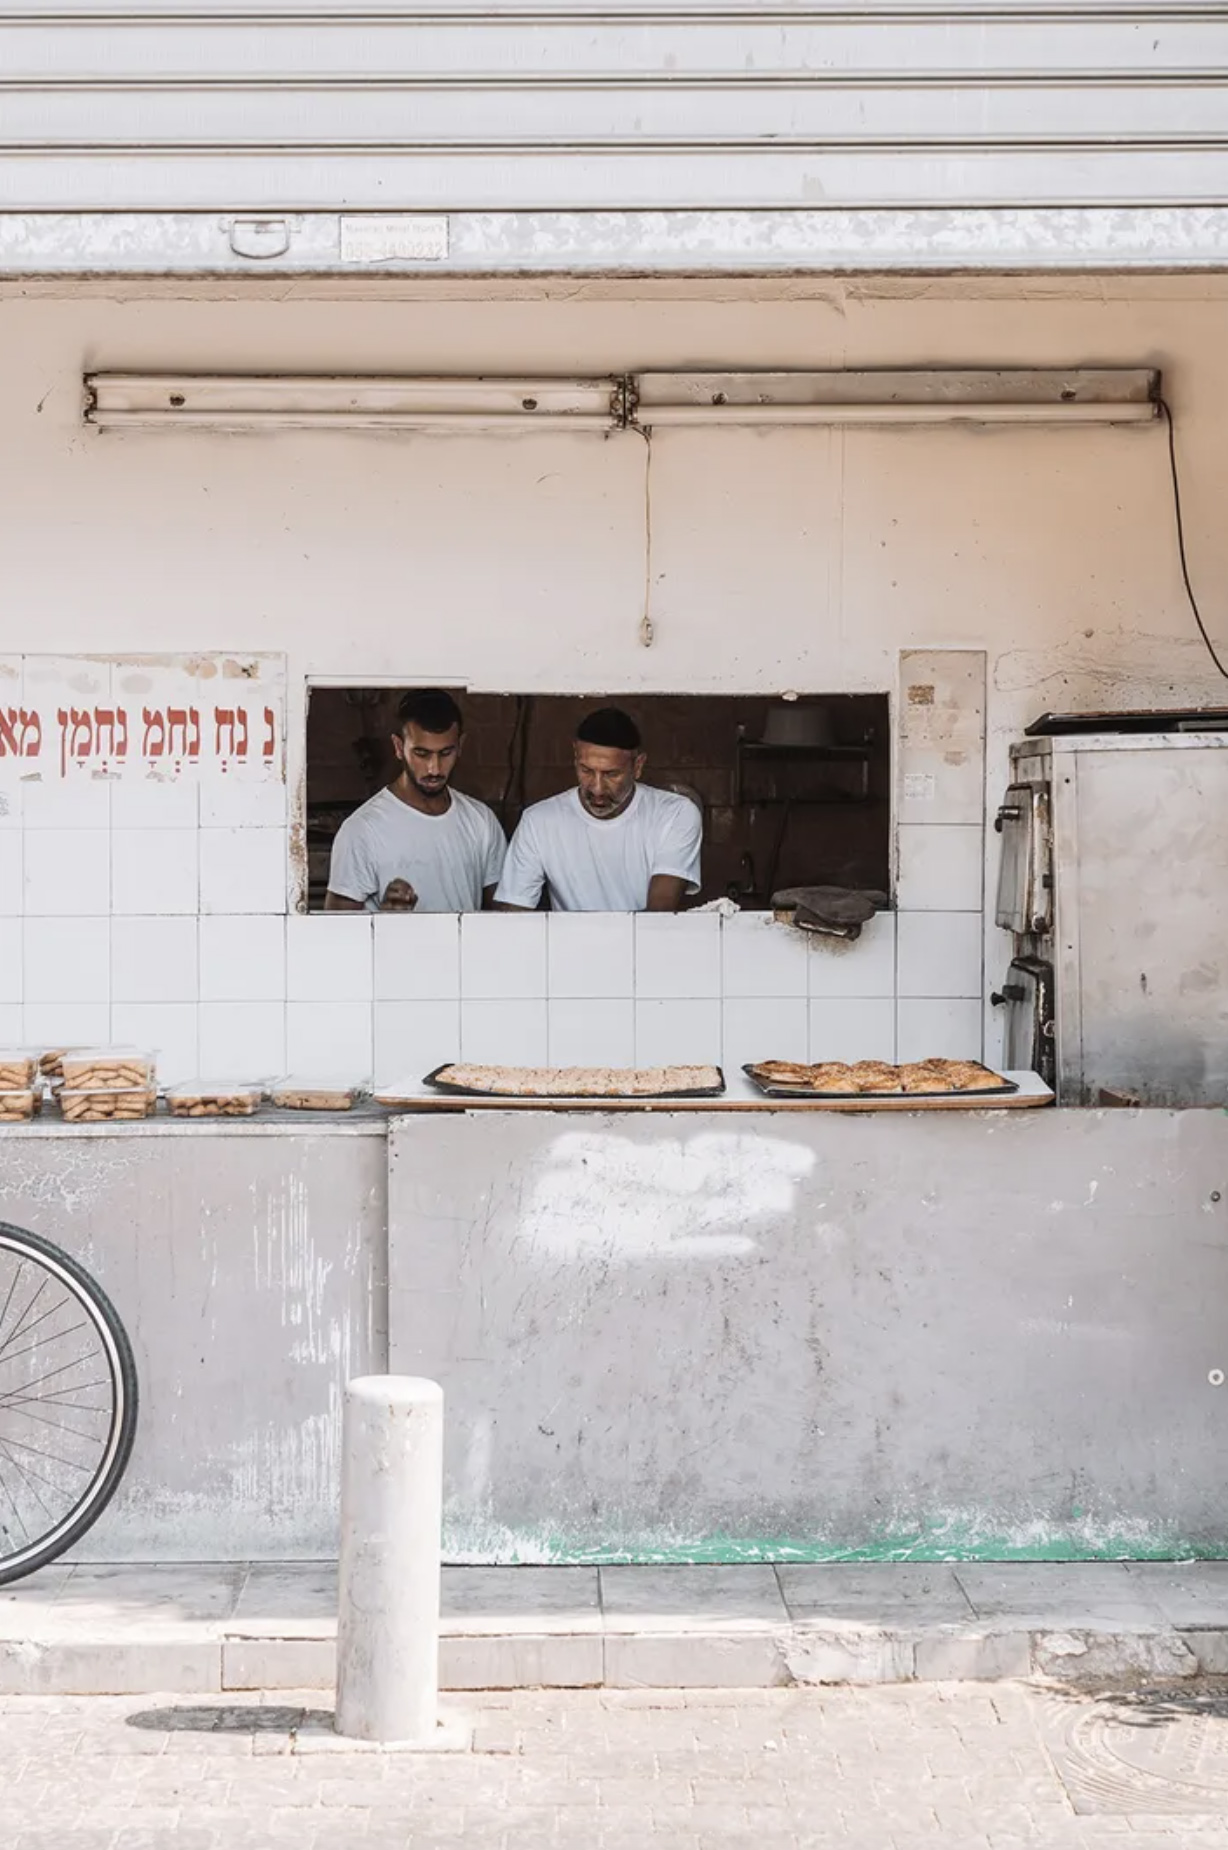 Επιλαχών στην κατηγορία Φαγητό. Δυο φουρνάρηδες ετοιμάζονται για τους πρωινούς πελάτες τους στο Τελ Αβίβ